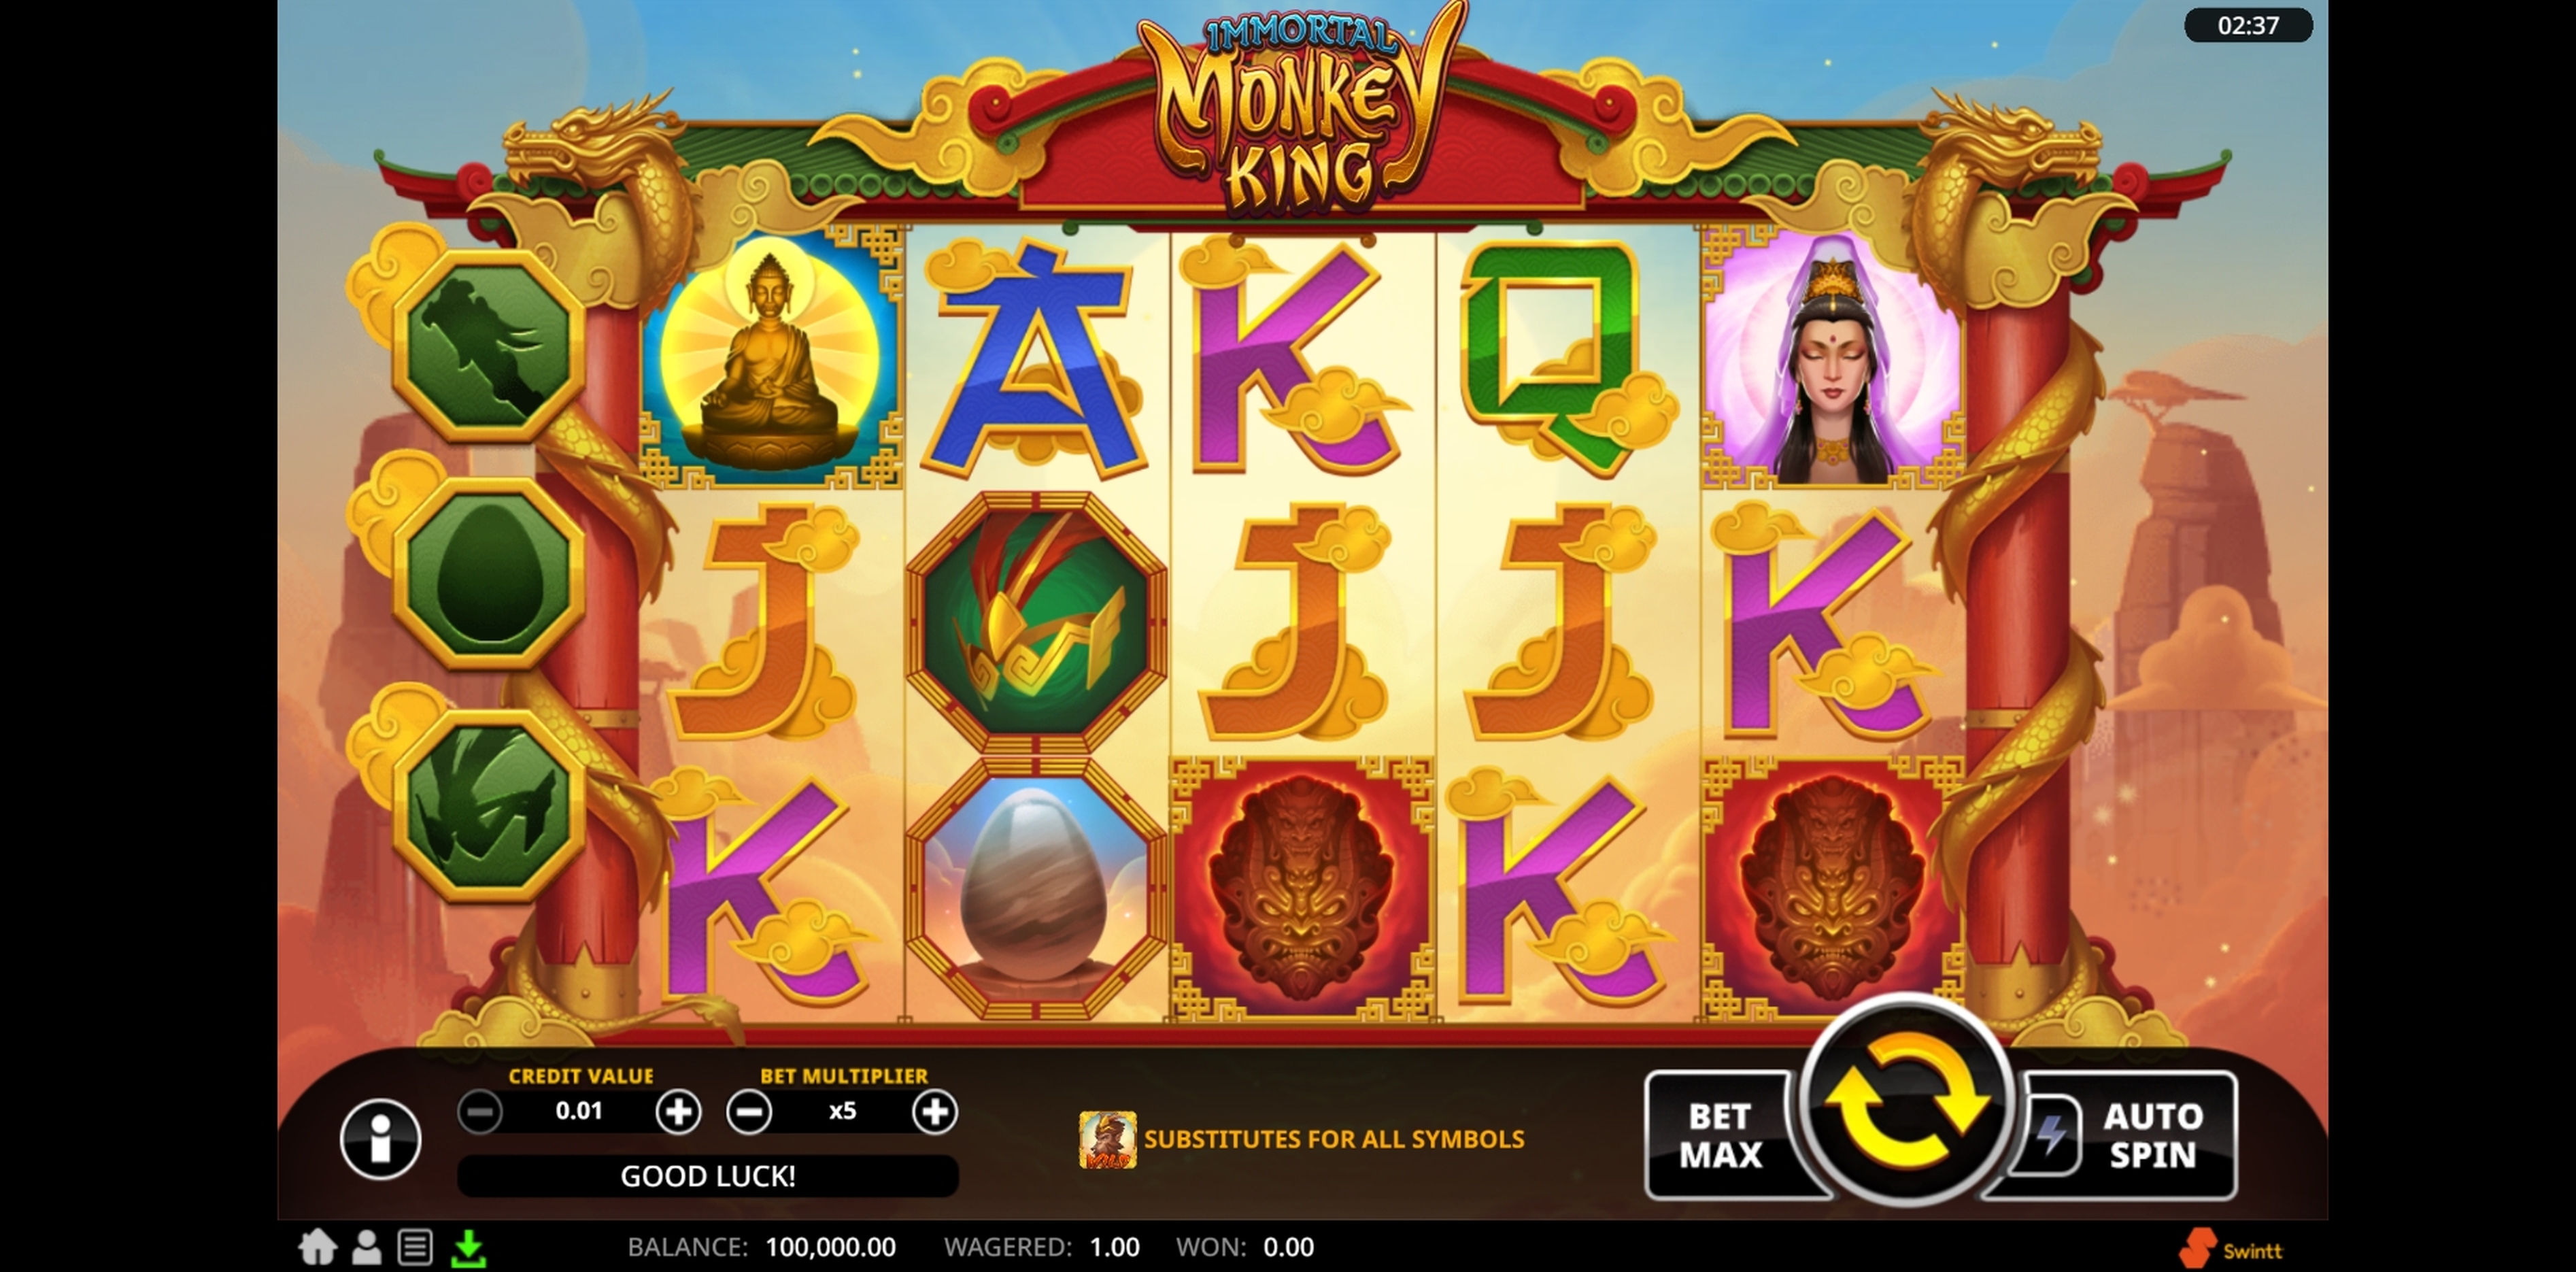 Reels in Immortal Monkey King Slot Game by Swintt